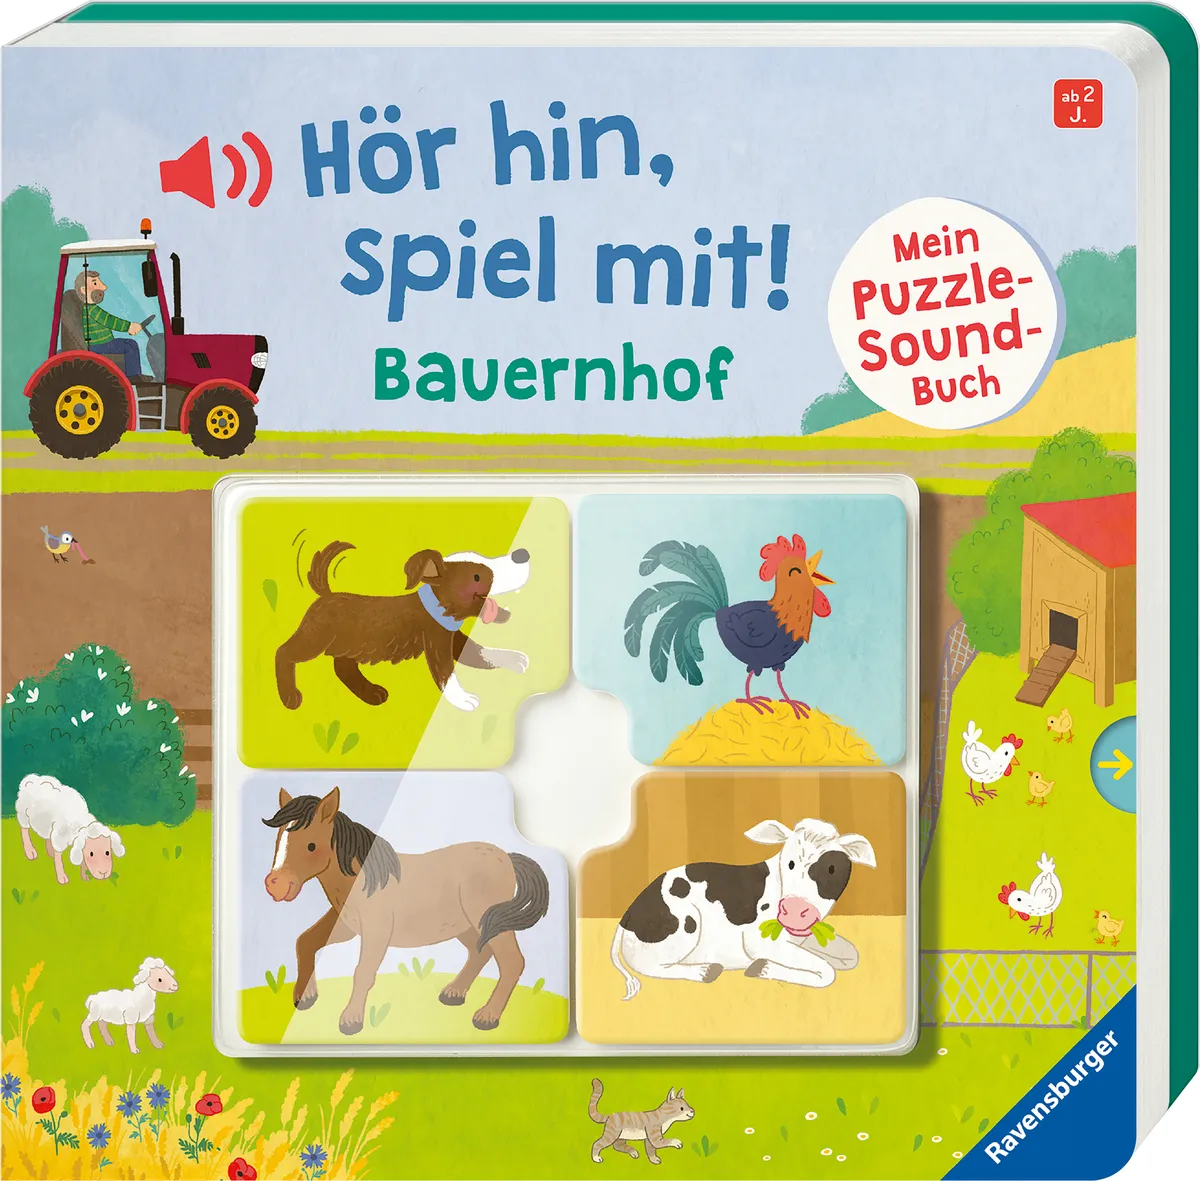 """Hör hin, spiel mit! Mein Puzzle-Soundbuch: Bauernhof"""